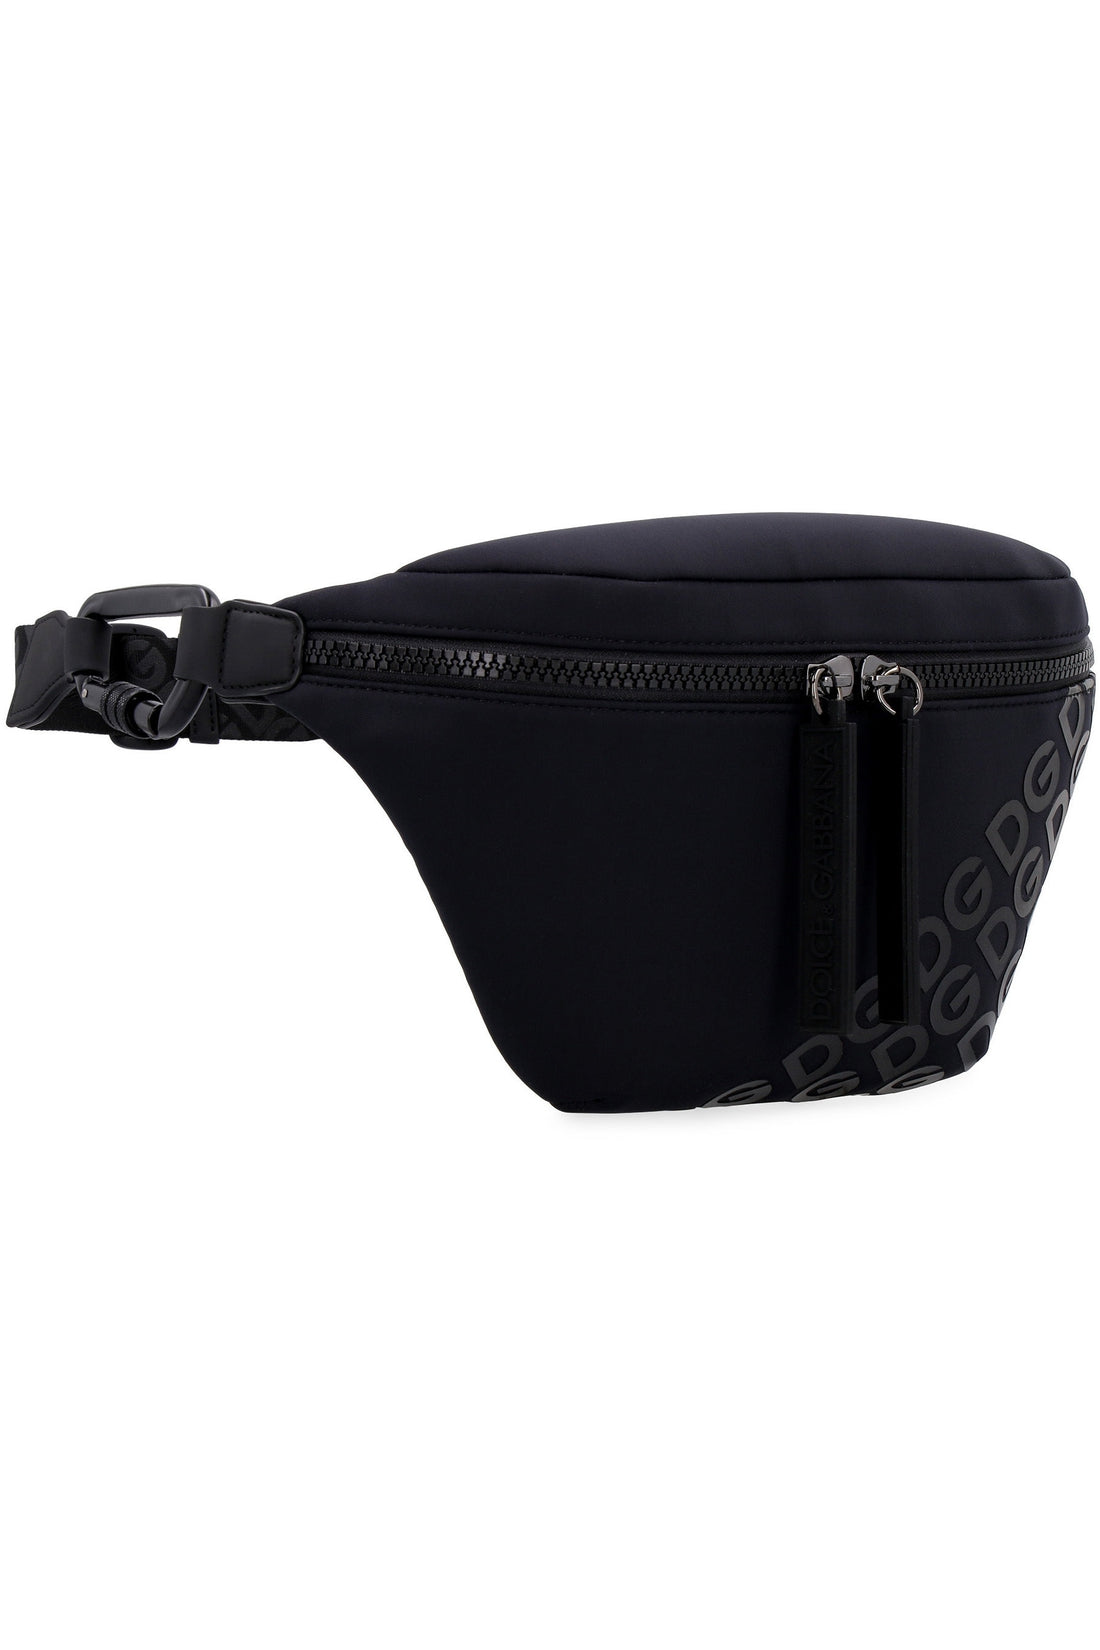 Dolce & Gabbana-OUTLET-SALE-Neoprene belt bag-ARCHIVIST